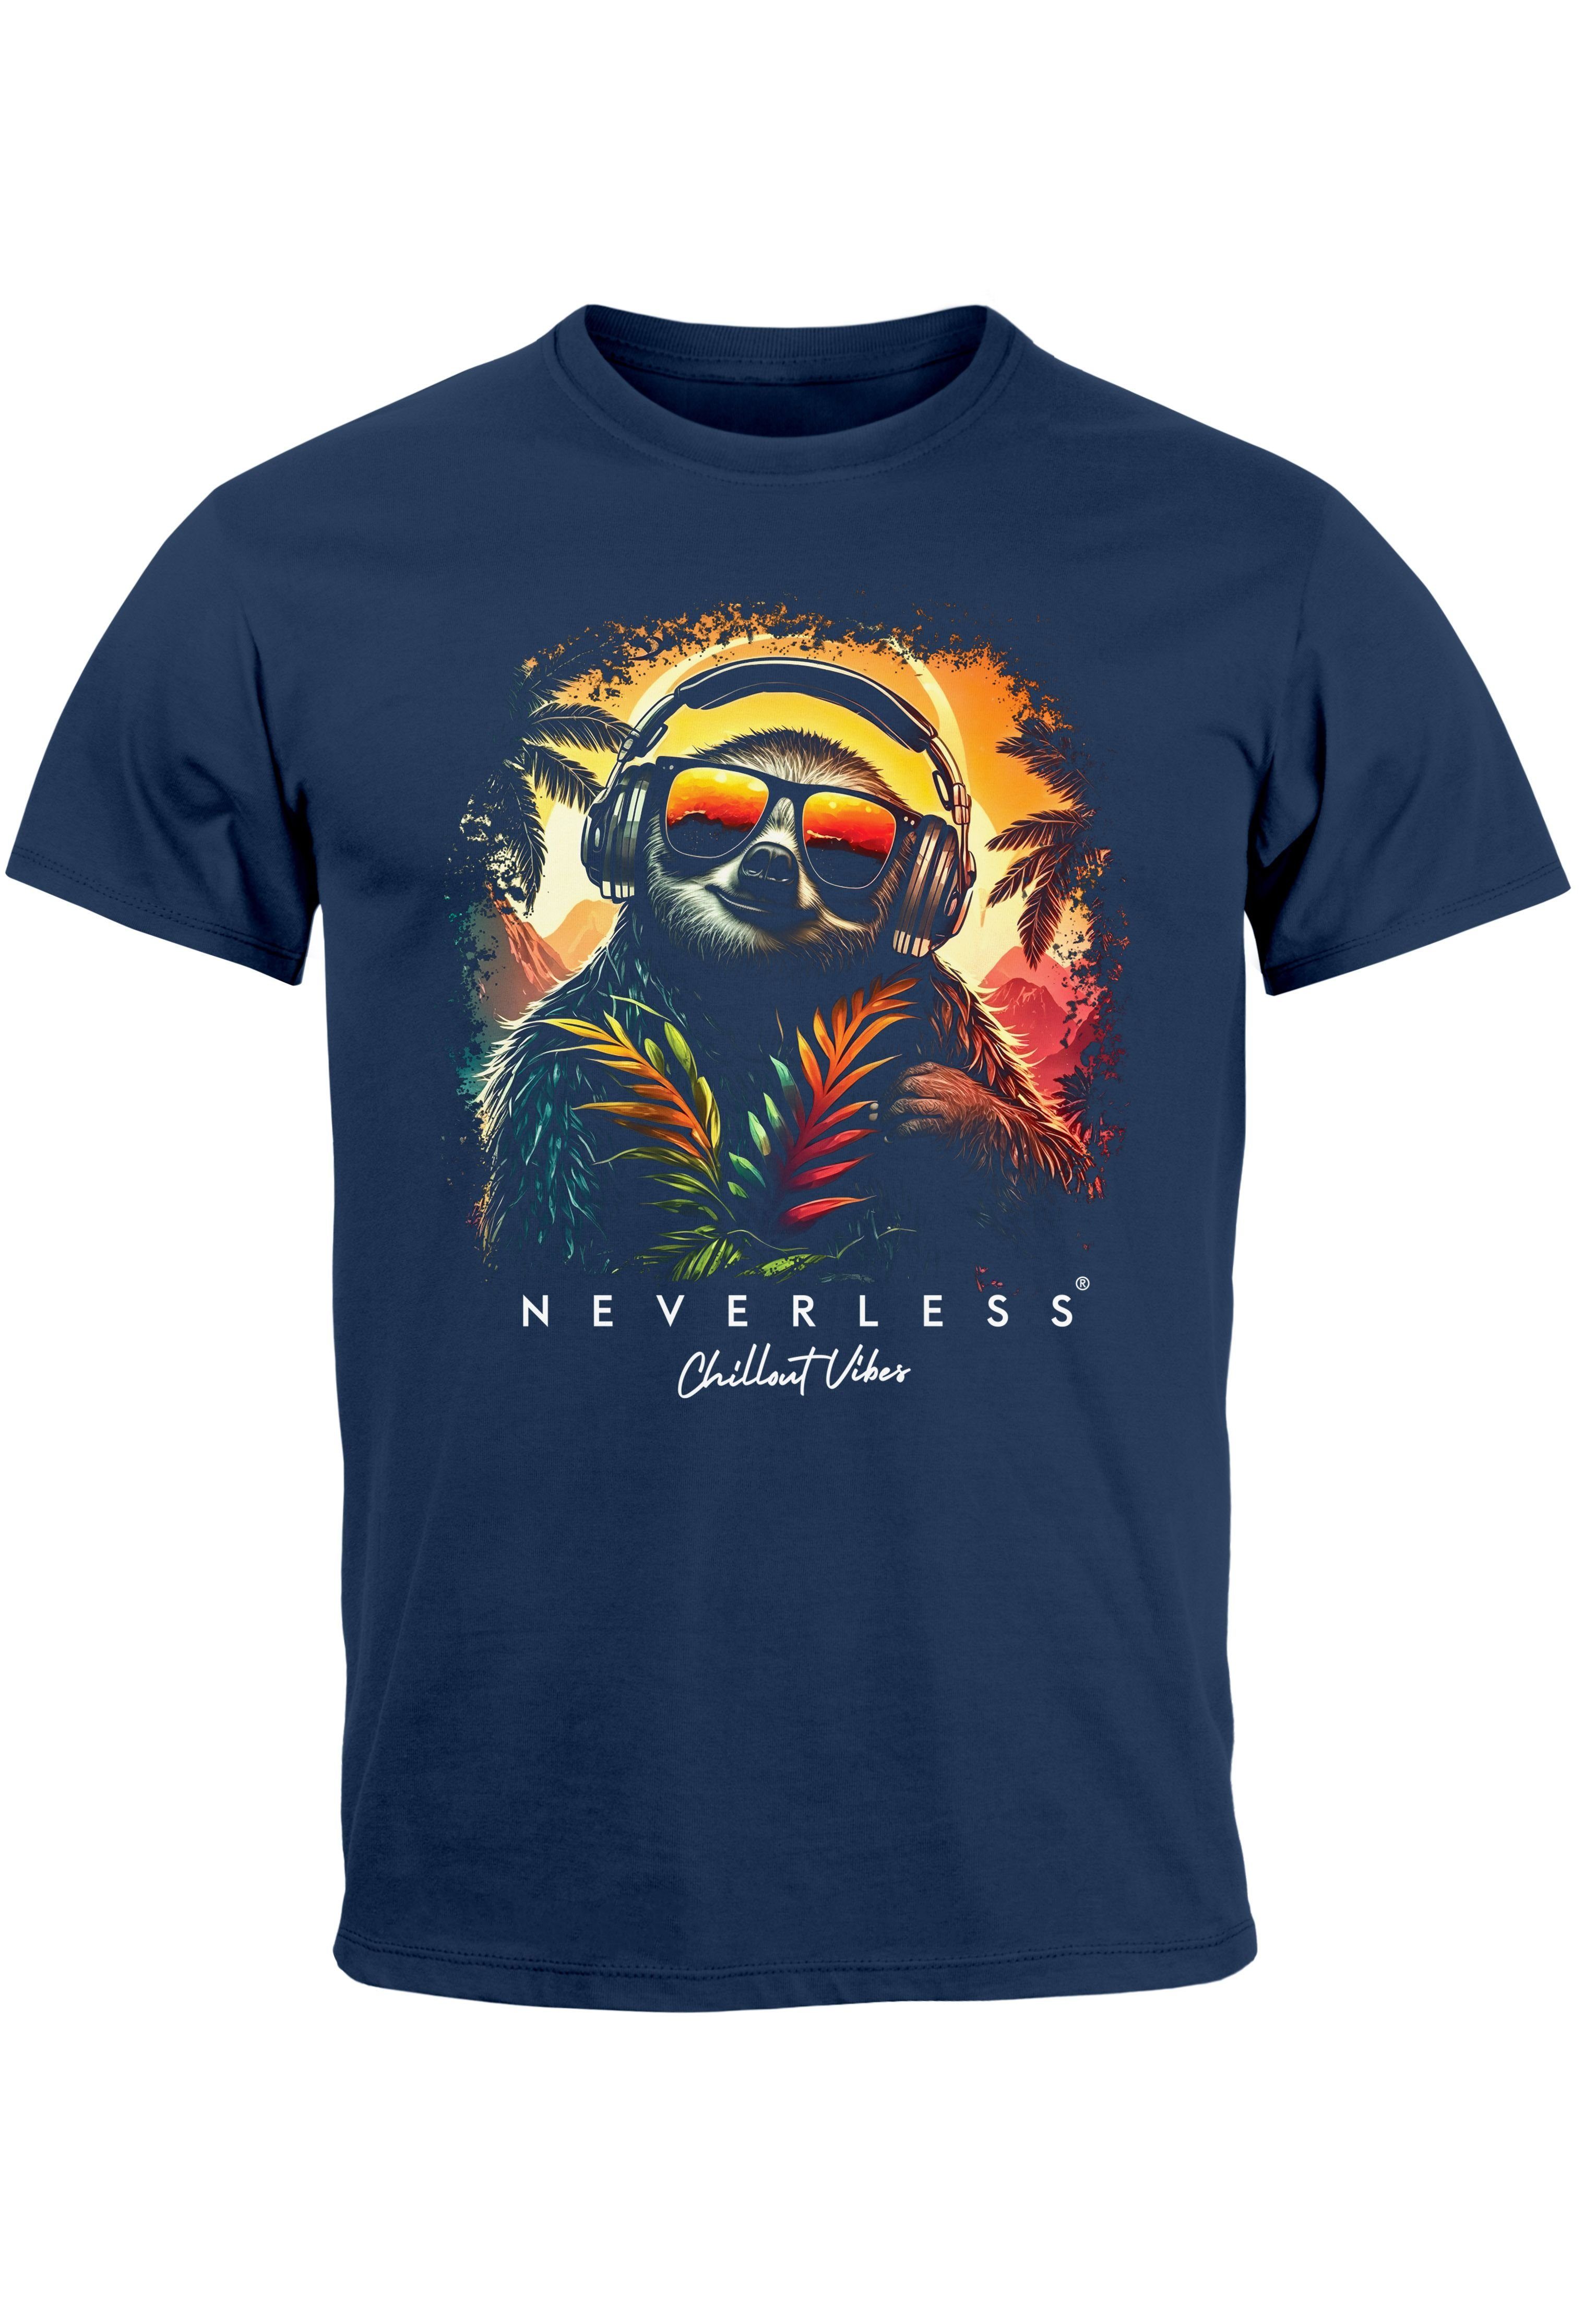 Neverless Print-Shirt Aufdruck Relax T-Shirt Musik Fas Chill DJ navy Print Sommer Herren Print mit Faultier